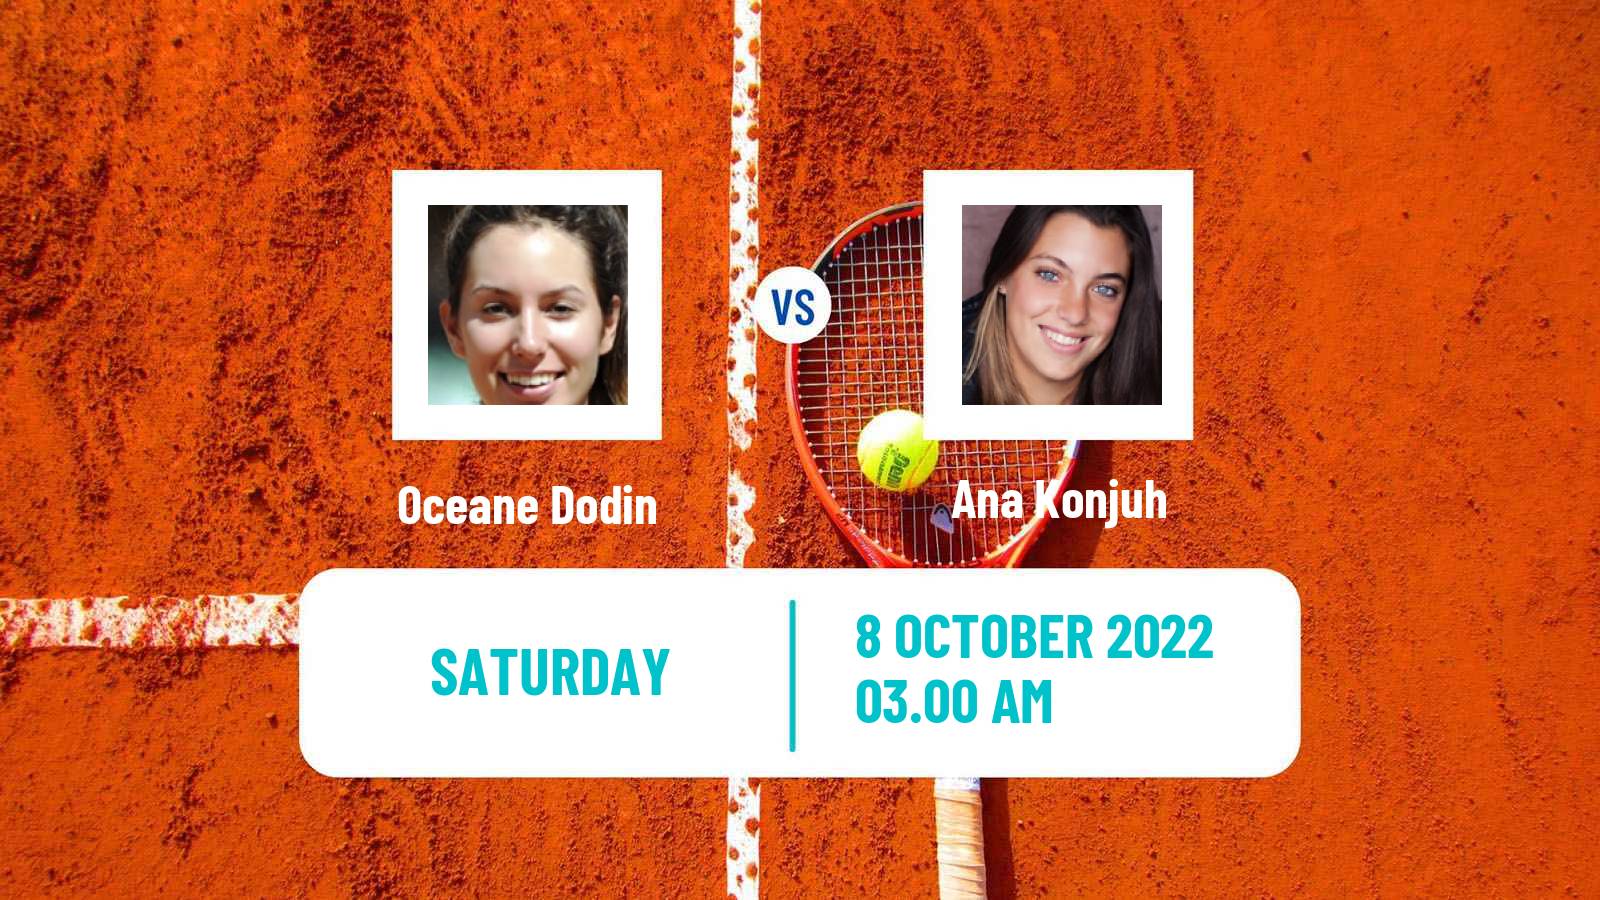 Tennis WTA Cluj Napoca Oceane Dodin - Ana Konjuh